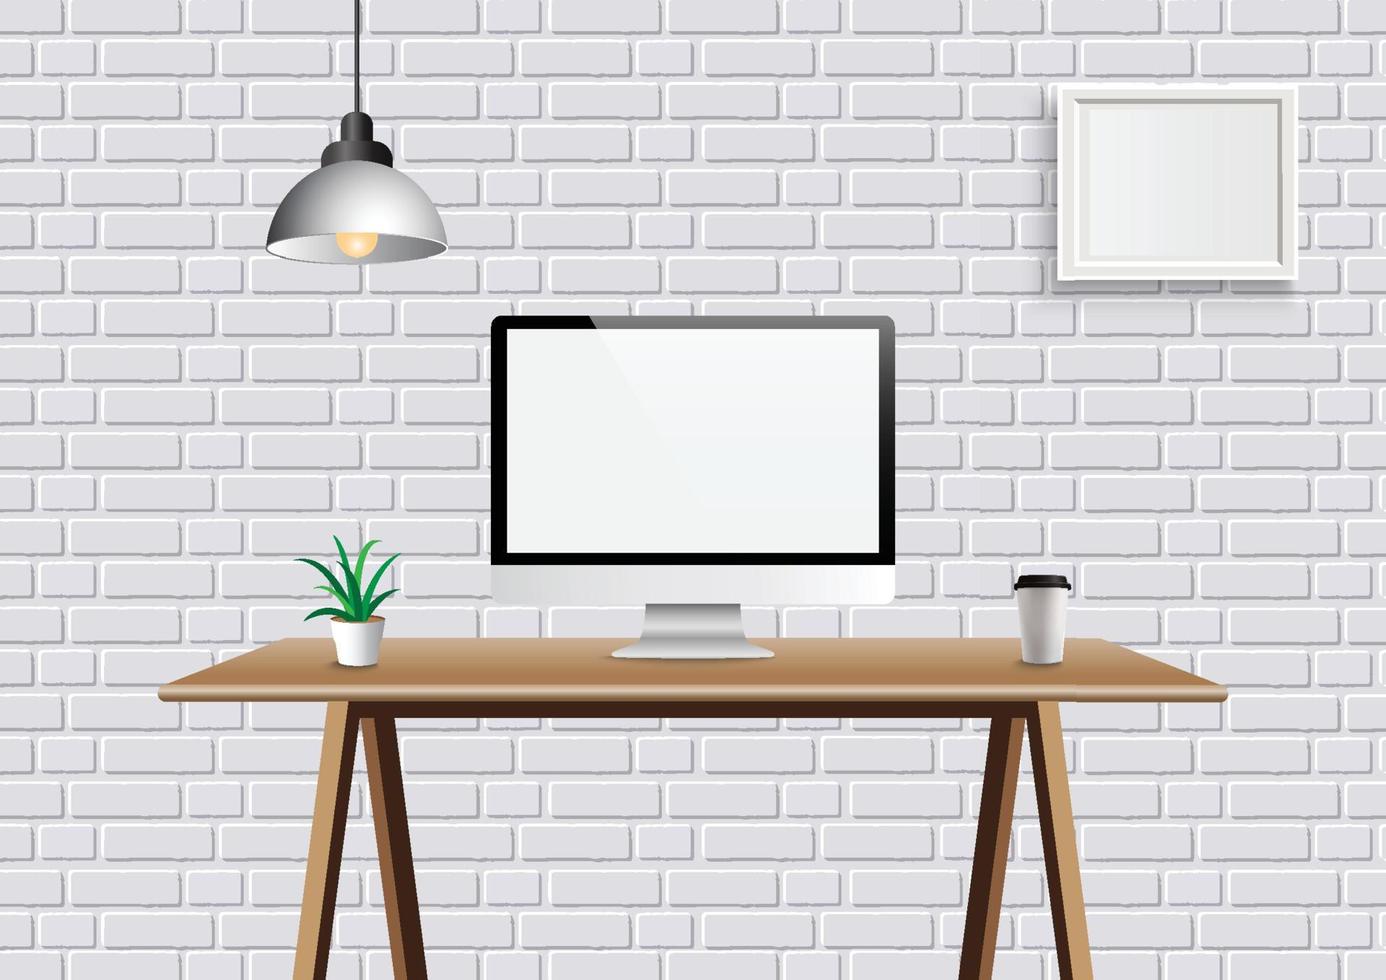 realistisk vektor kontor kreativt utrymme med display på skrivbordet bord. mockup arbetsyta bakgrund med frontvy dator skrivbord och ram på väggen.